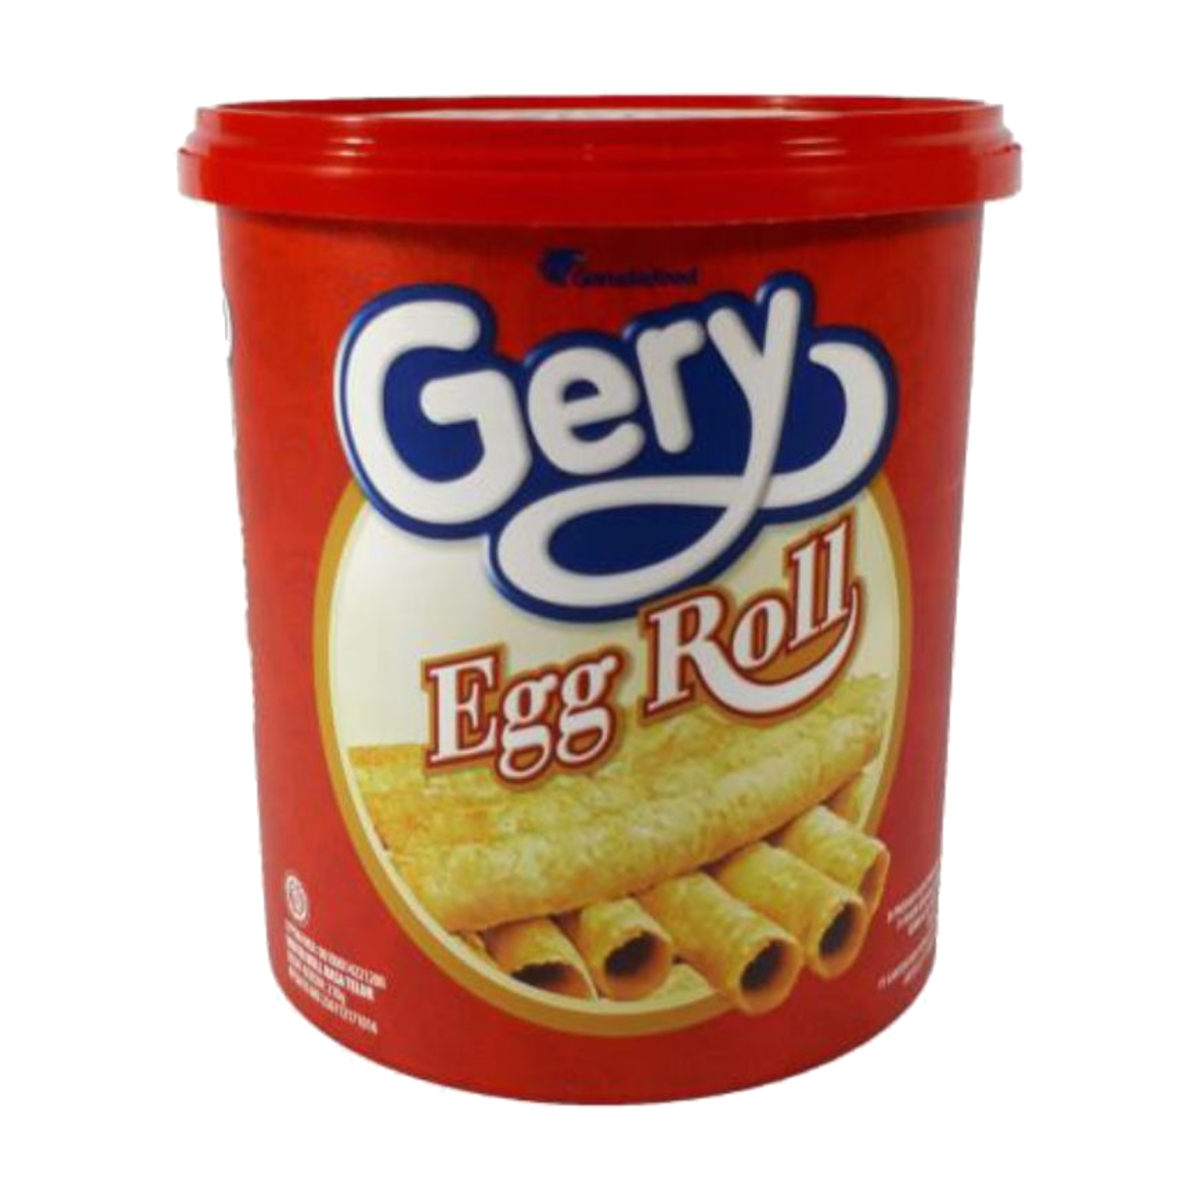 Gery Egg Roll 210g